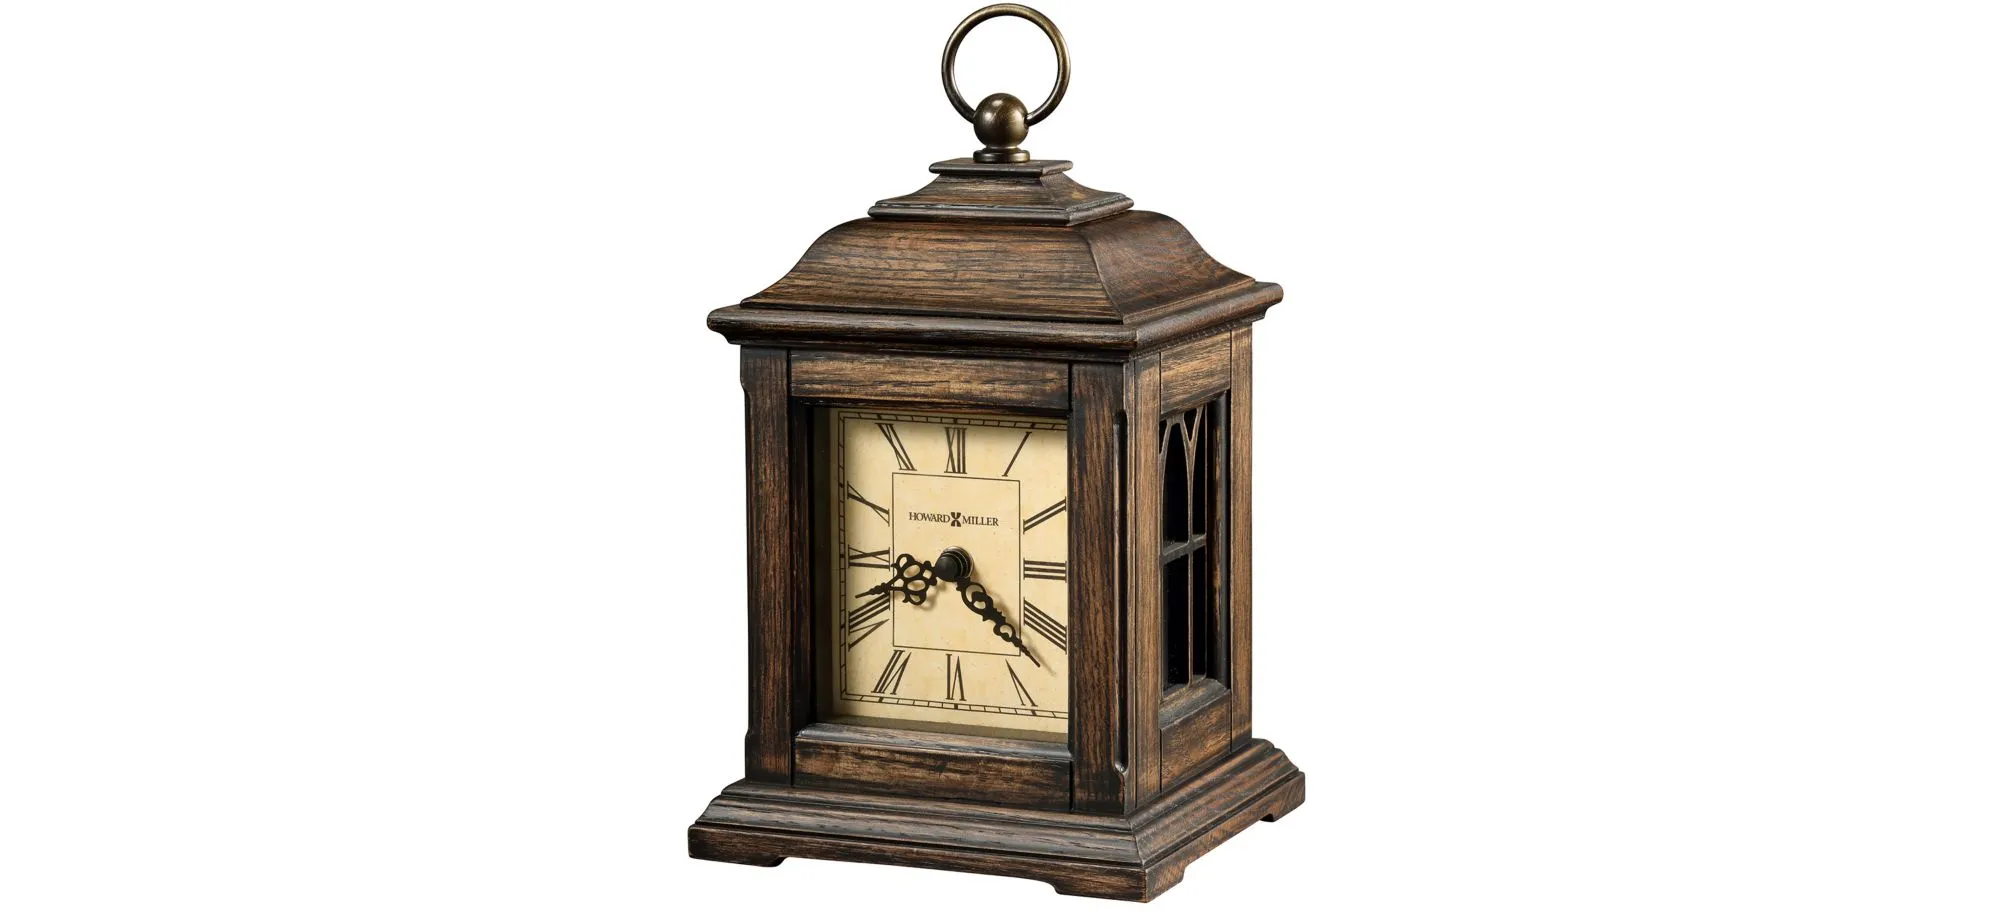 Talia Mantel Clock in Brown by Howard Miller